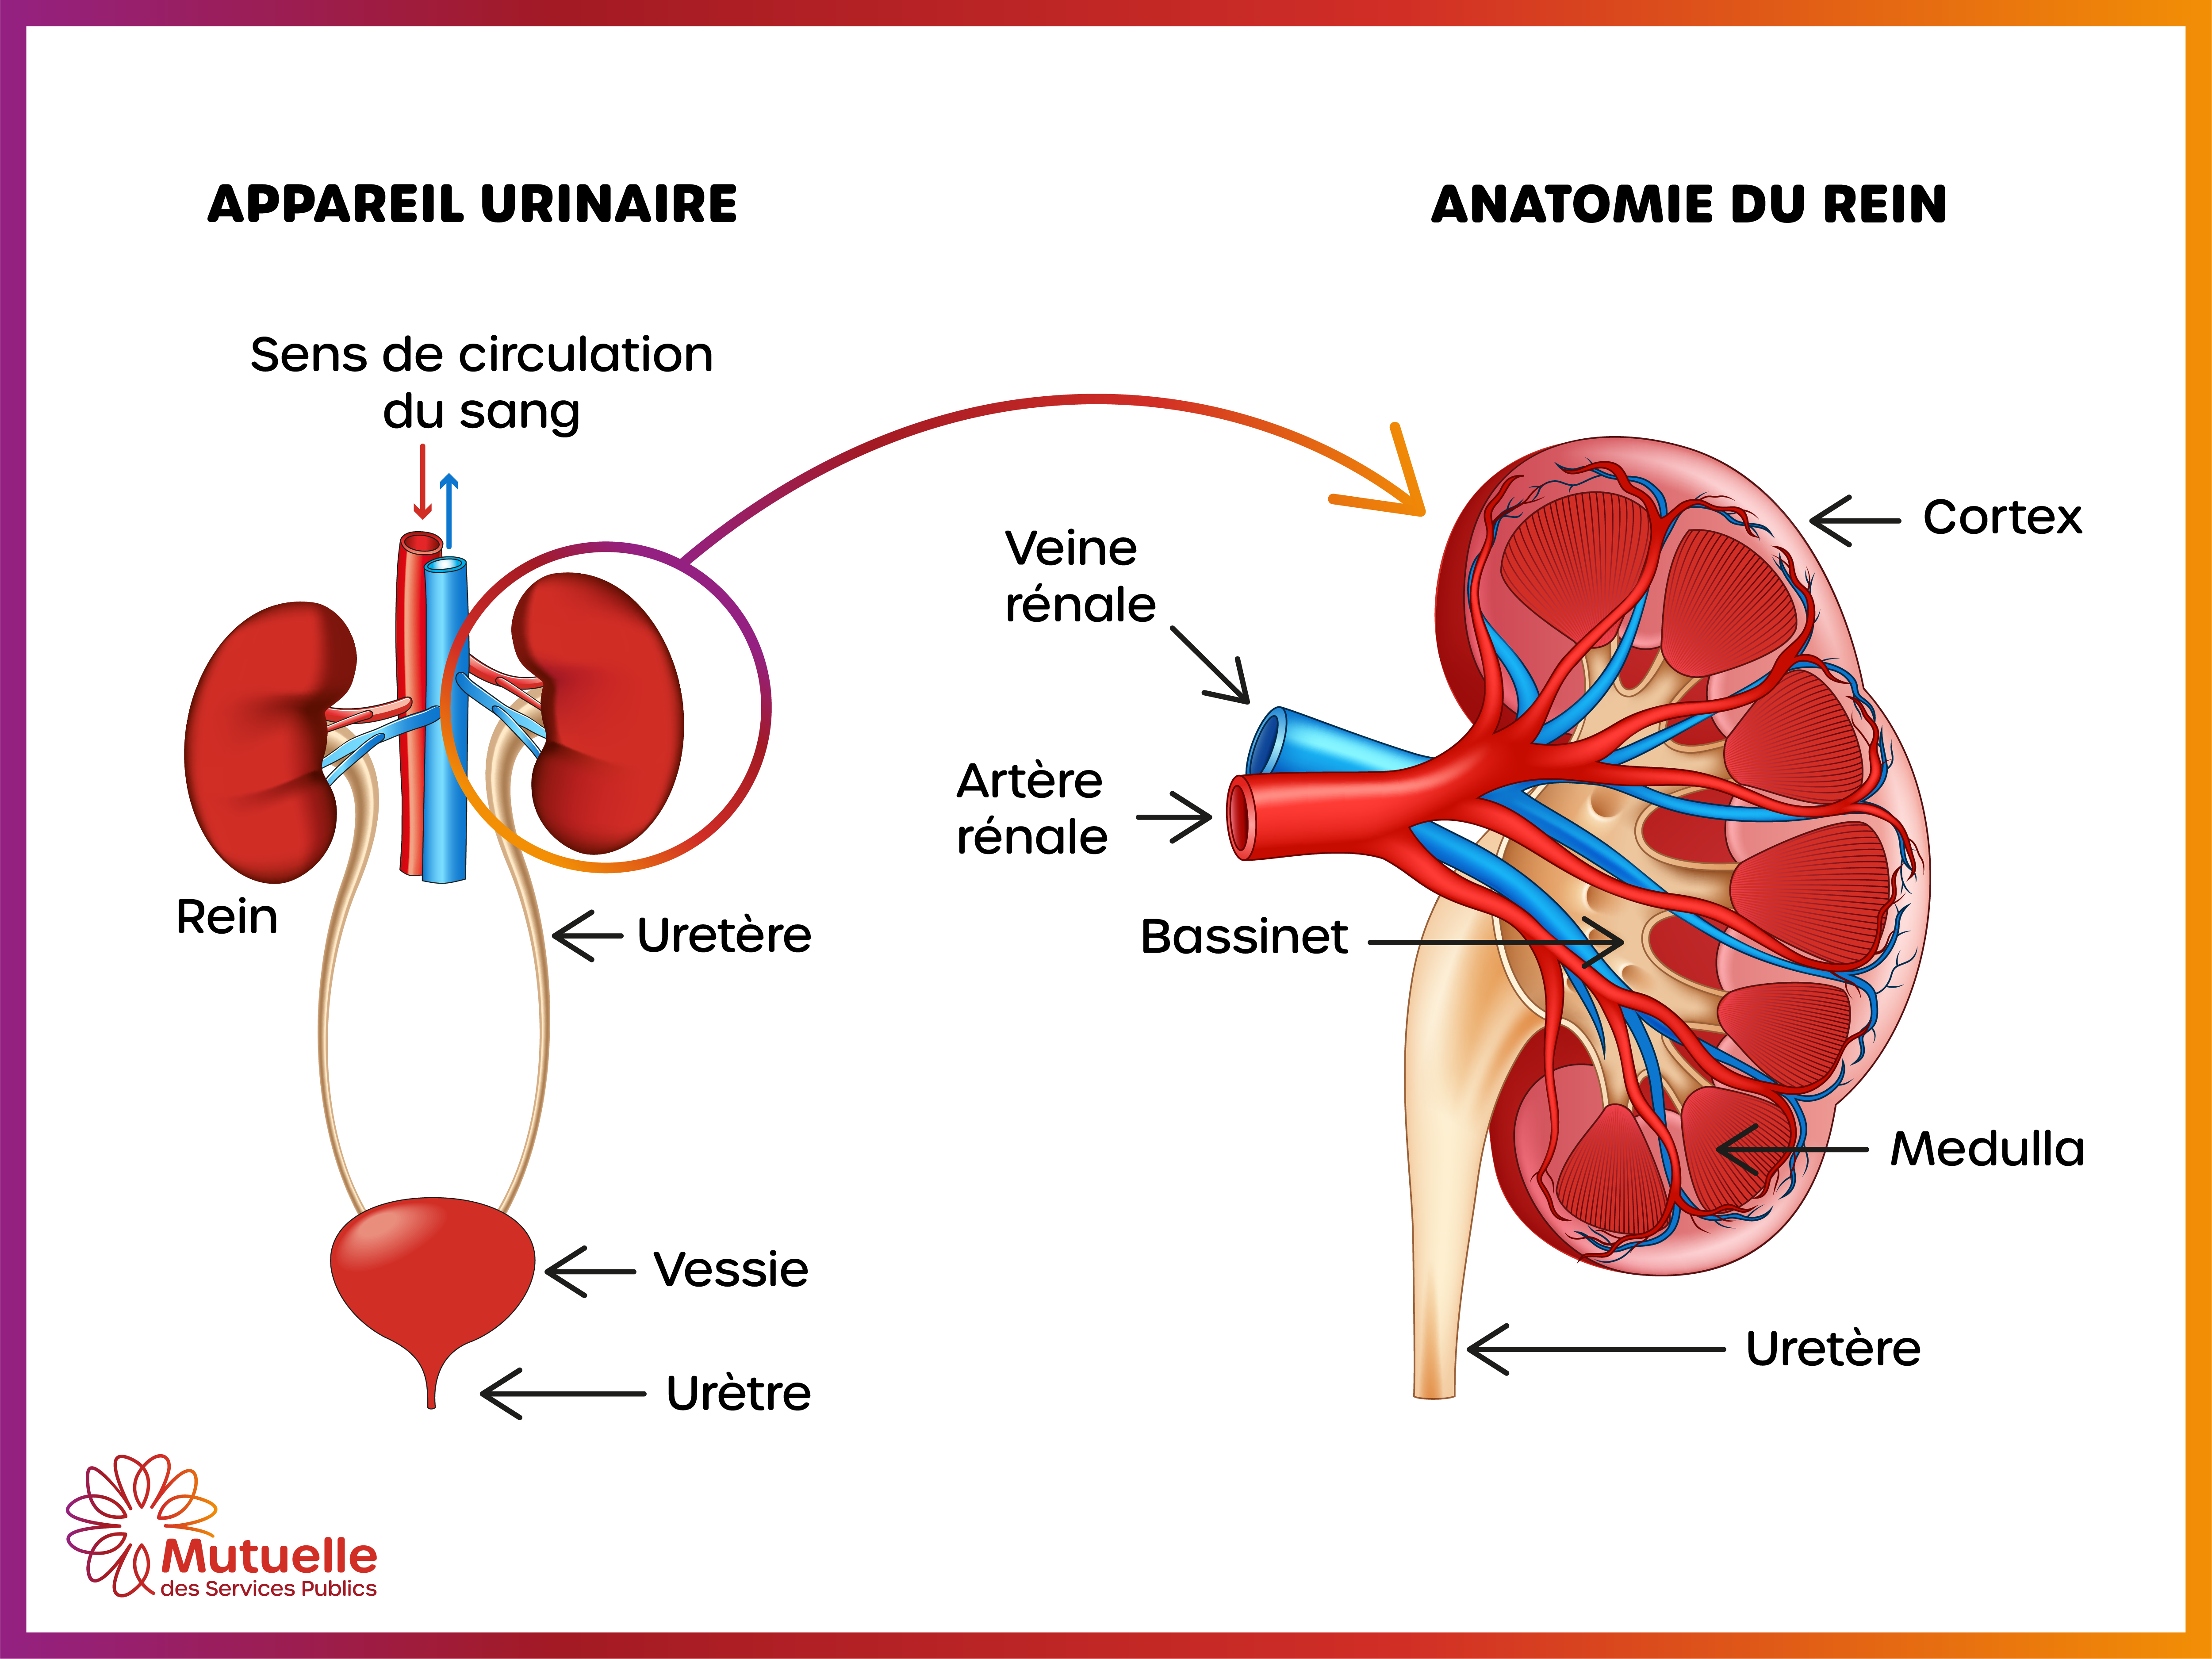 Schéma anatomique du rein : cortex, médulla, sinus rénal, artère rénale, veine rénale, uretère, calices rénaux, bassinet rénal et vaisseaux sanguins. La structure interne du rein est composée de glomérules, tubules rénaux et néphrons.